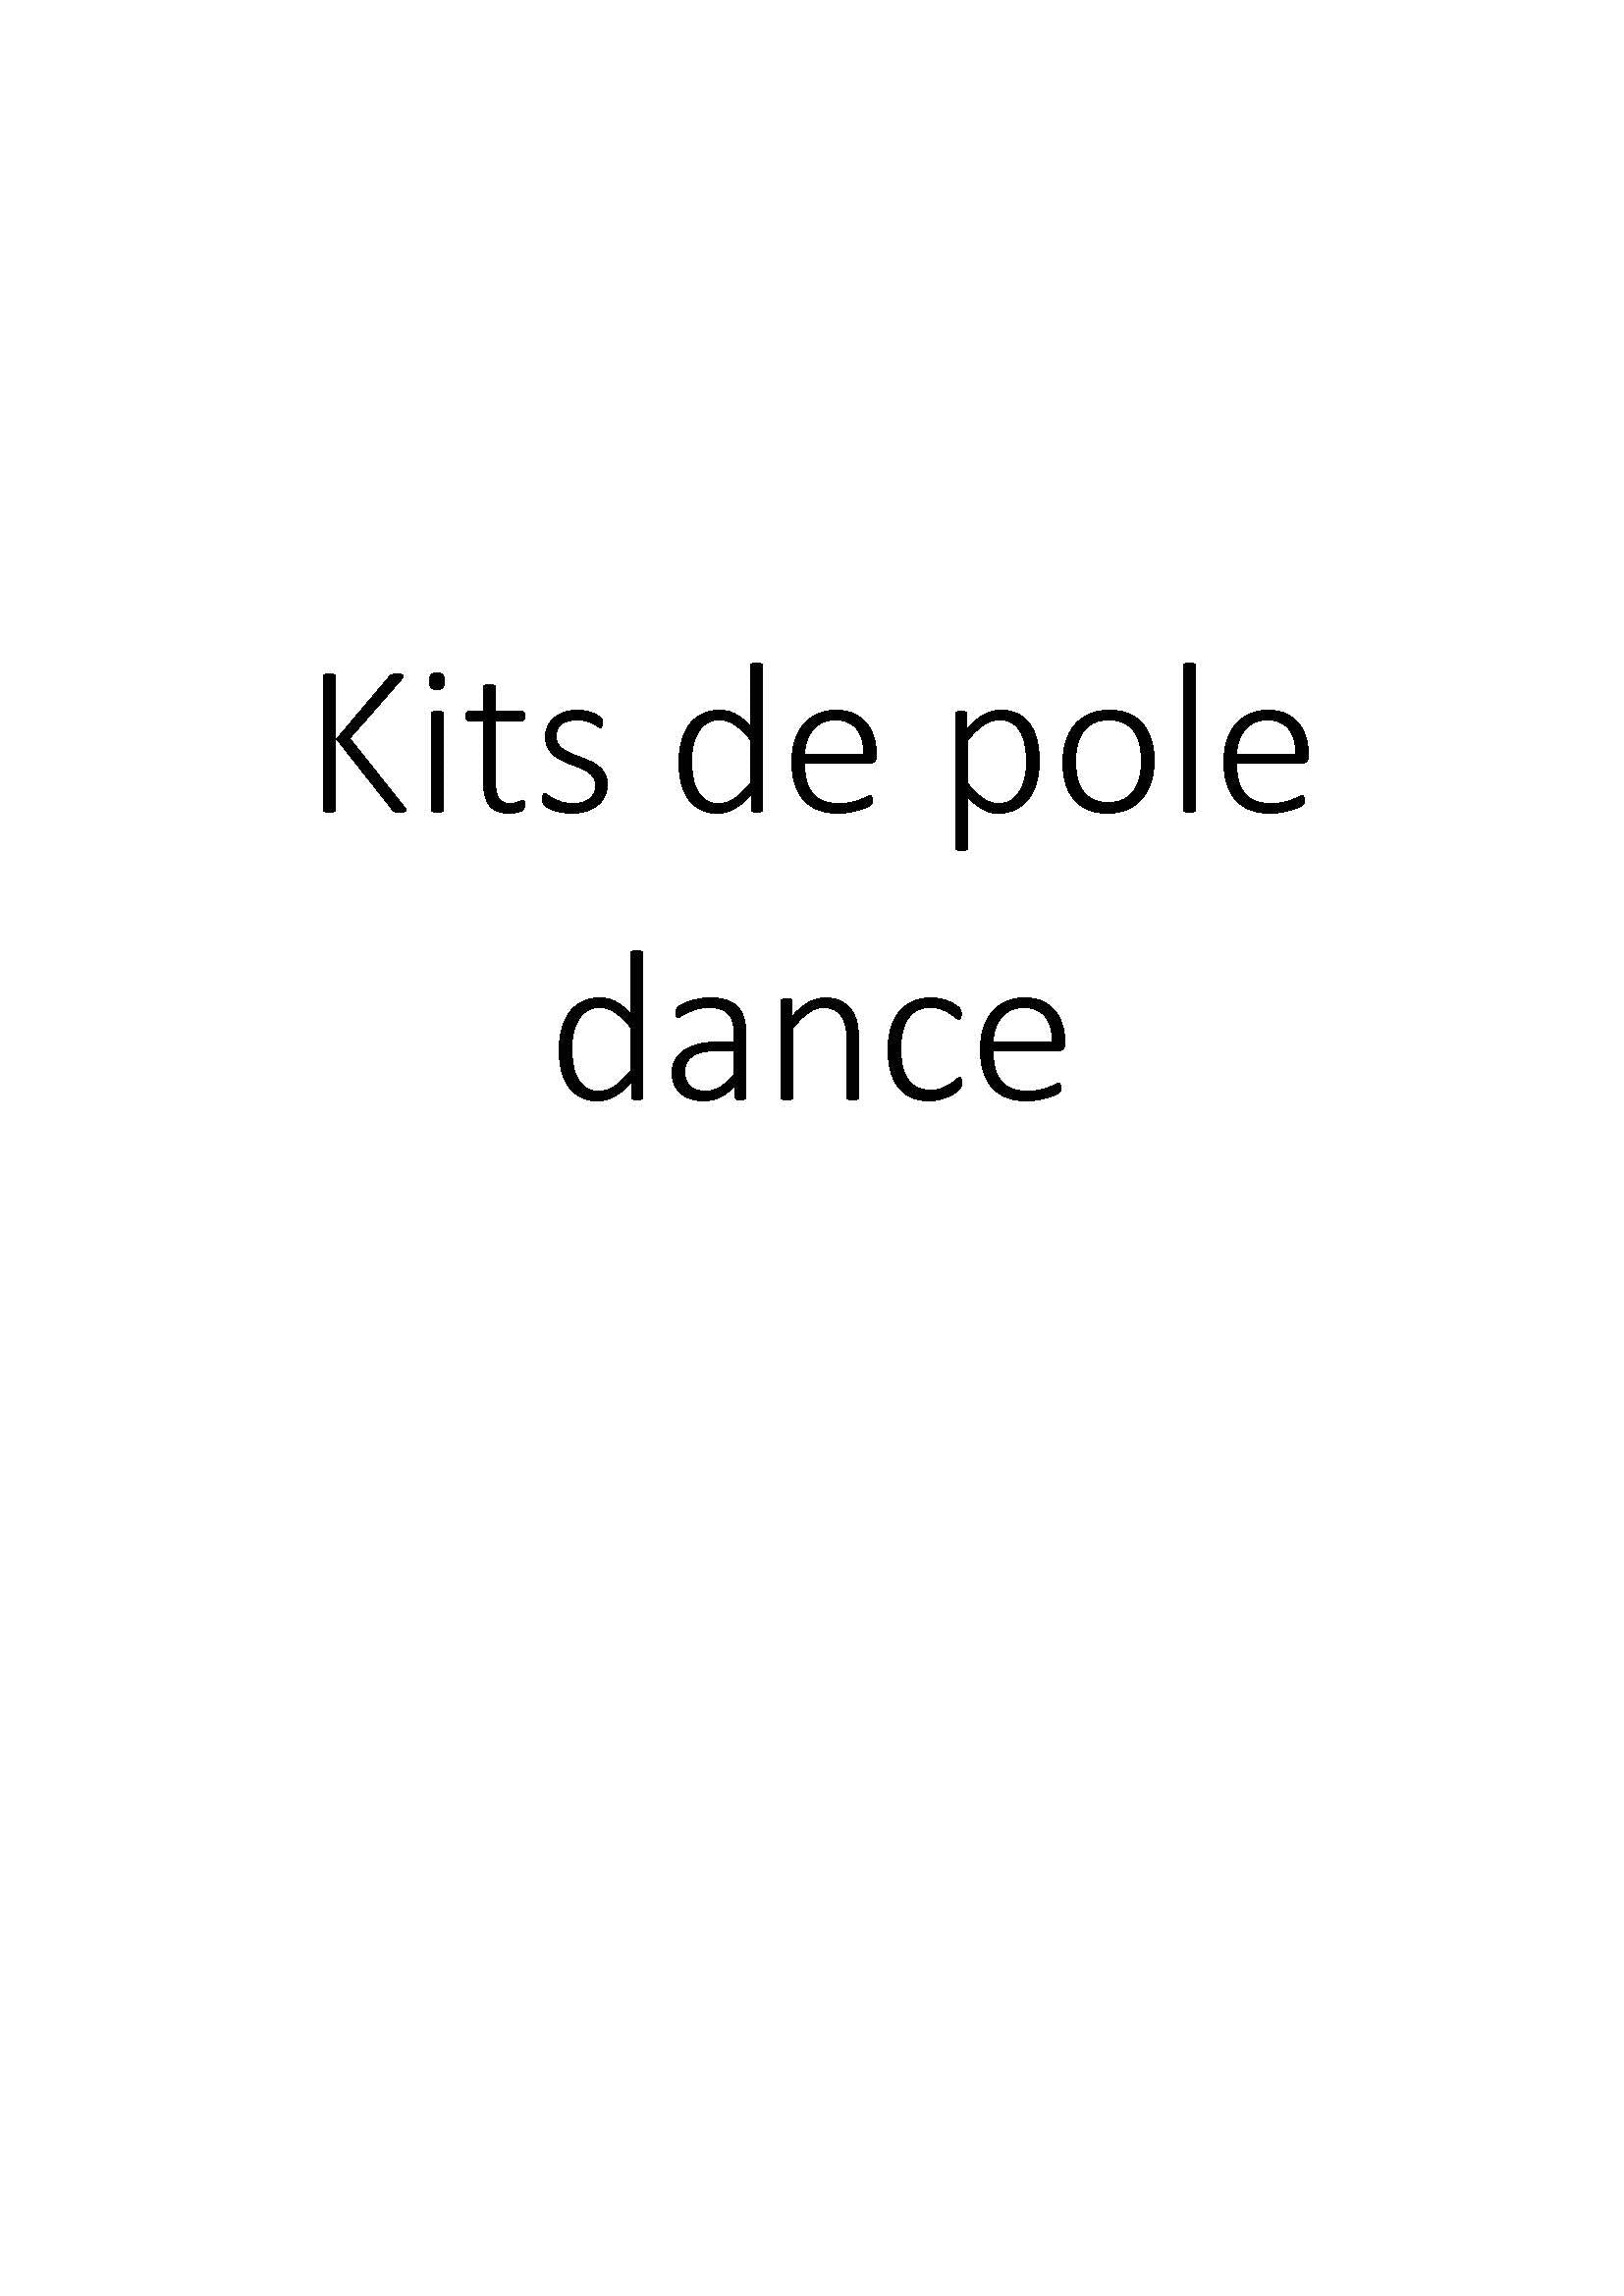 Kits de pole dance